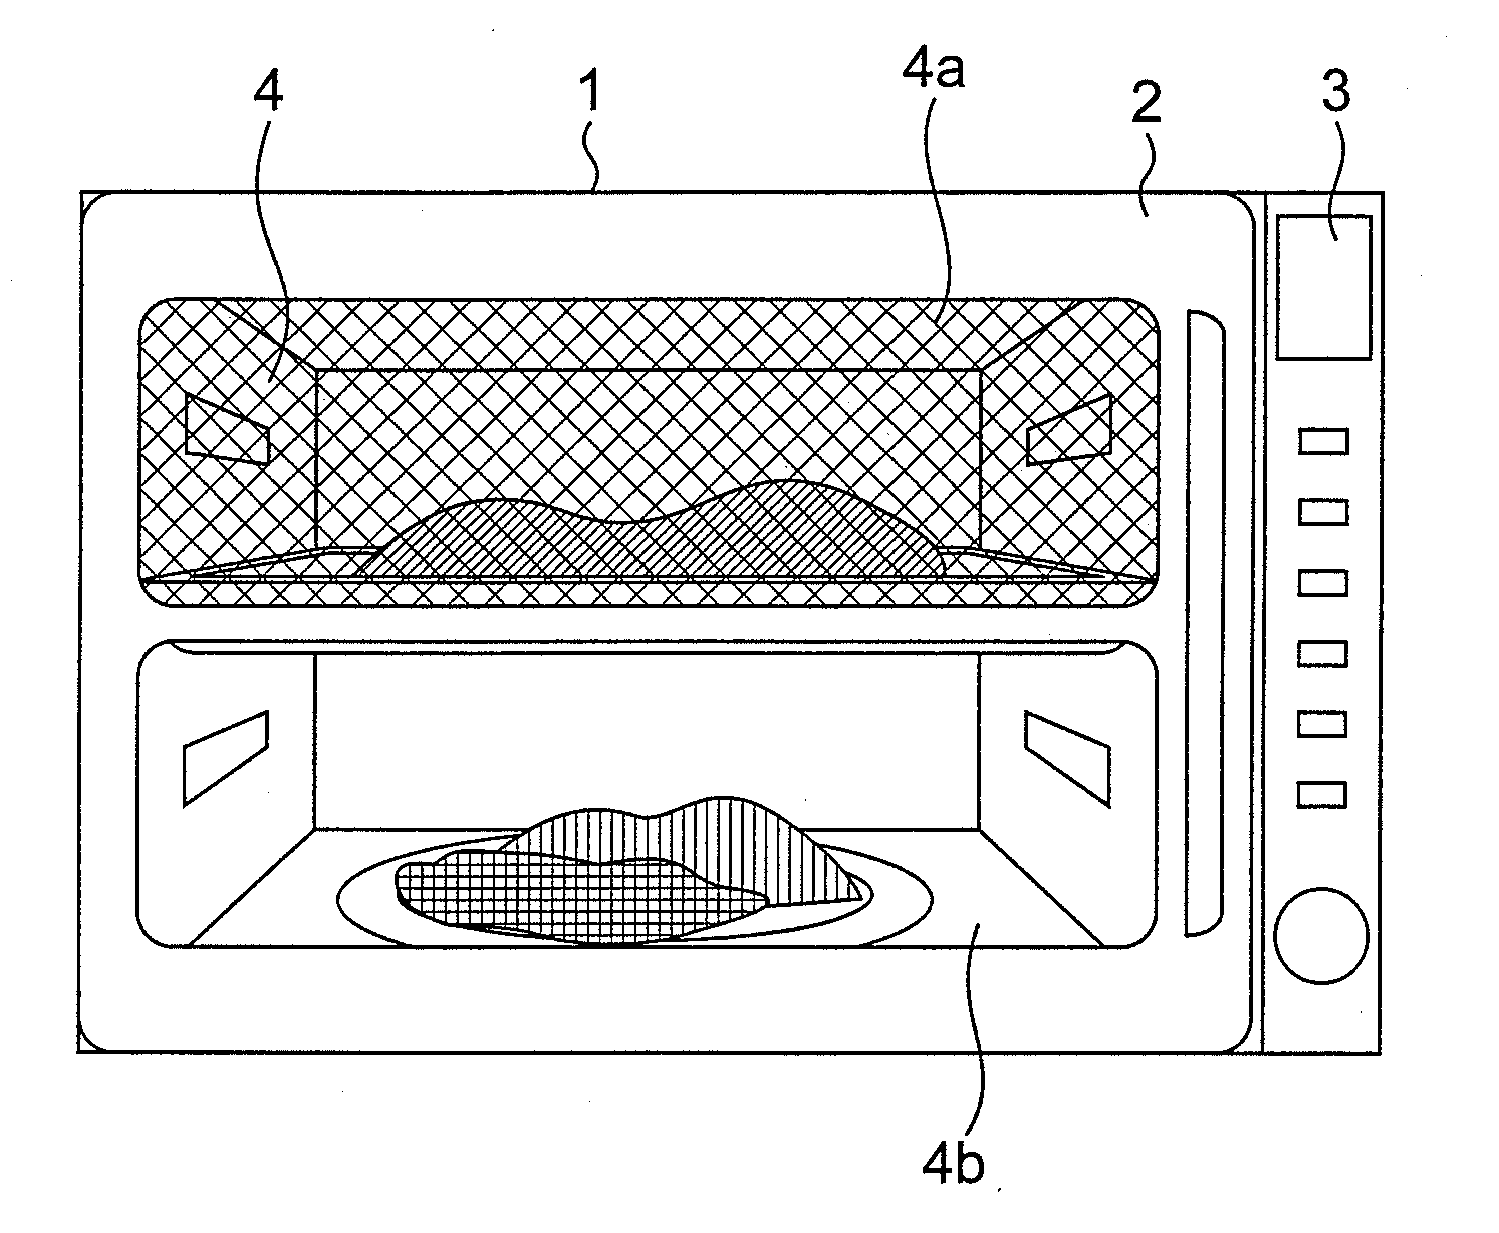 Microwave heating apparatus